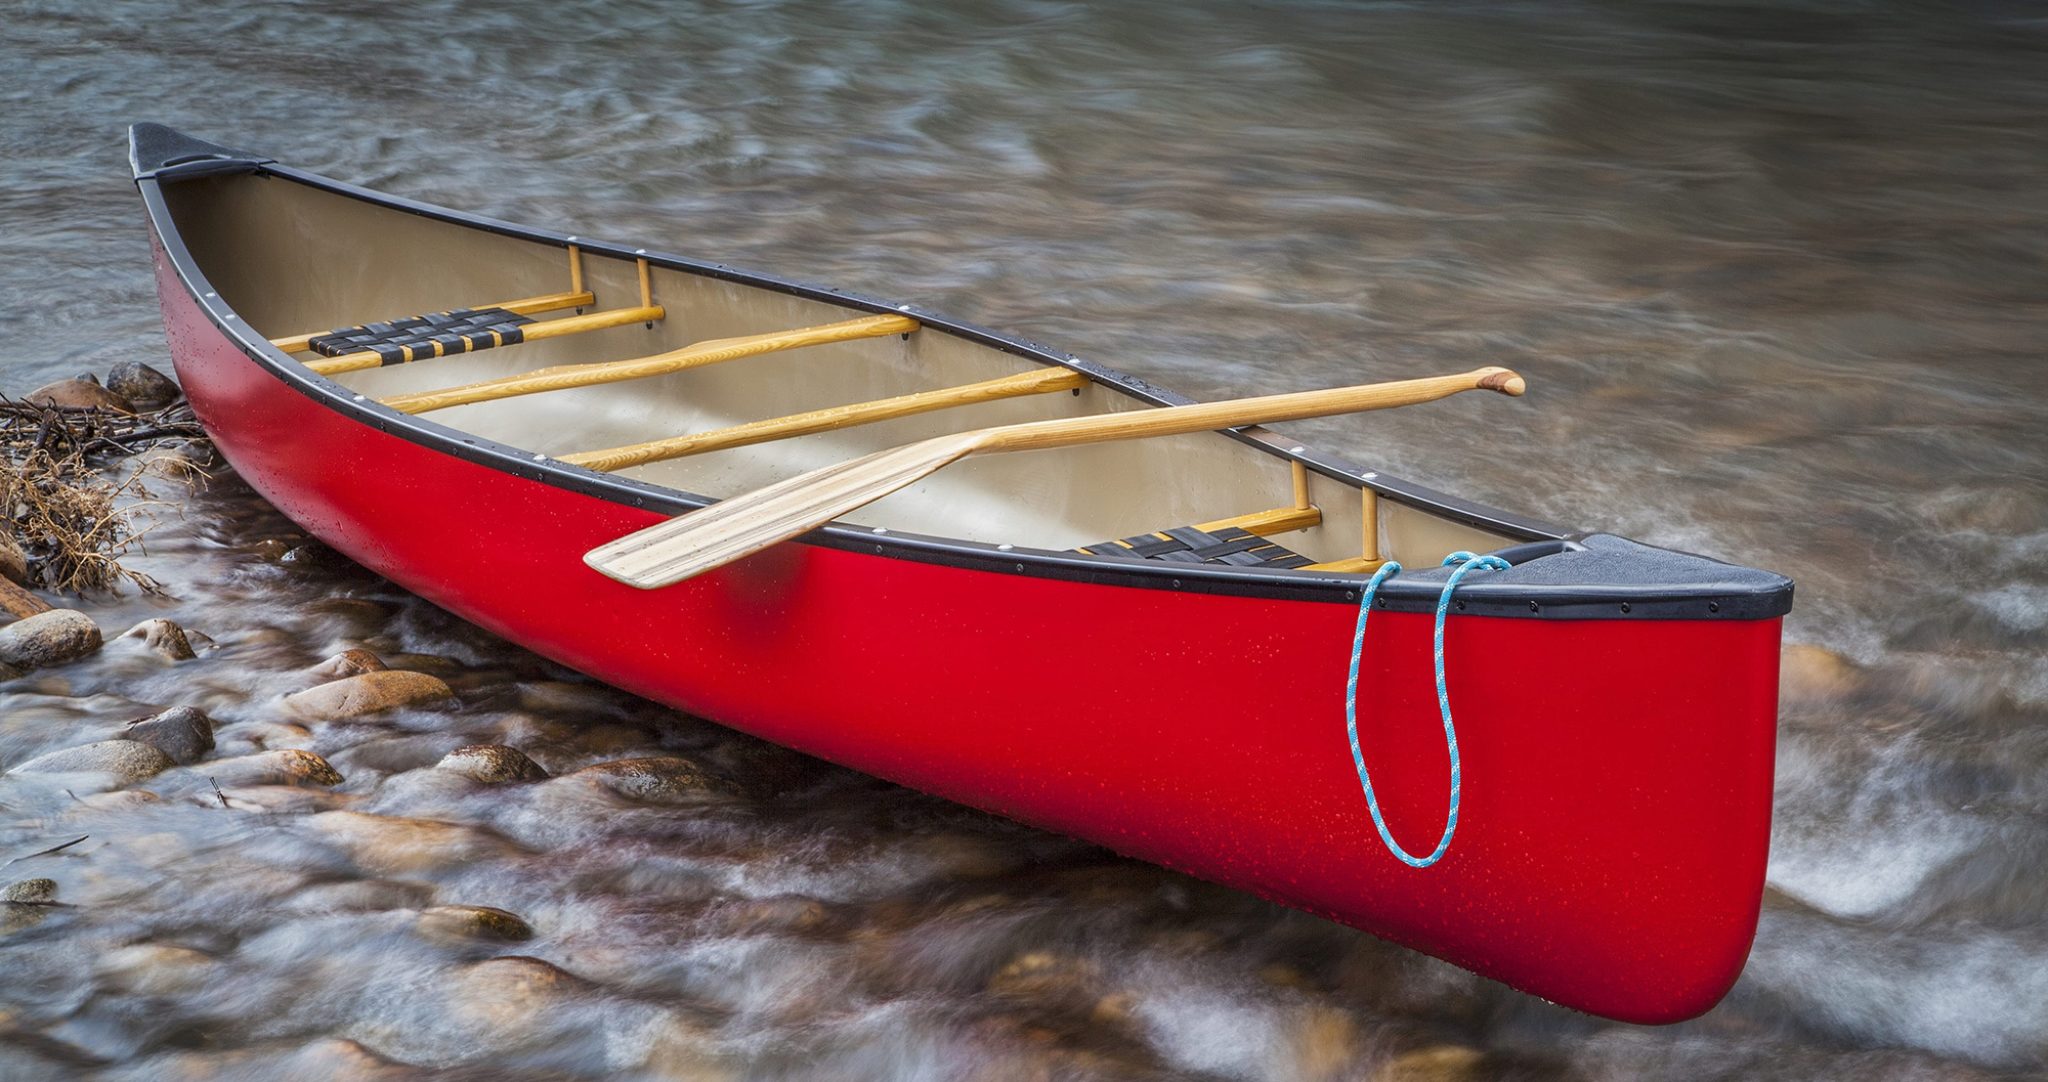 Alomejor Pagaie de canoë en Bois Fait à la Main pagaie de Kayak pagaie Gonflable de Bateau Kayak Radeau pagaie de canoë pour Bateau de canoë de Kayak